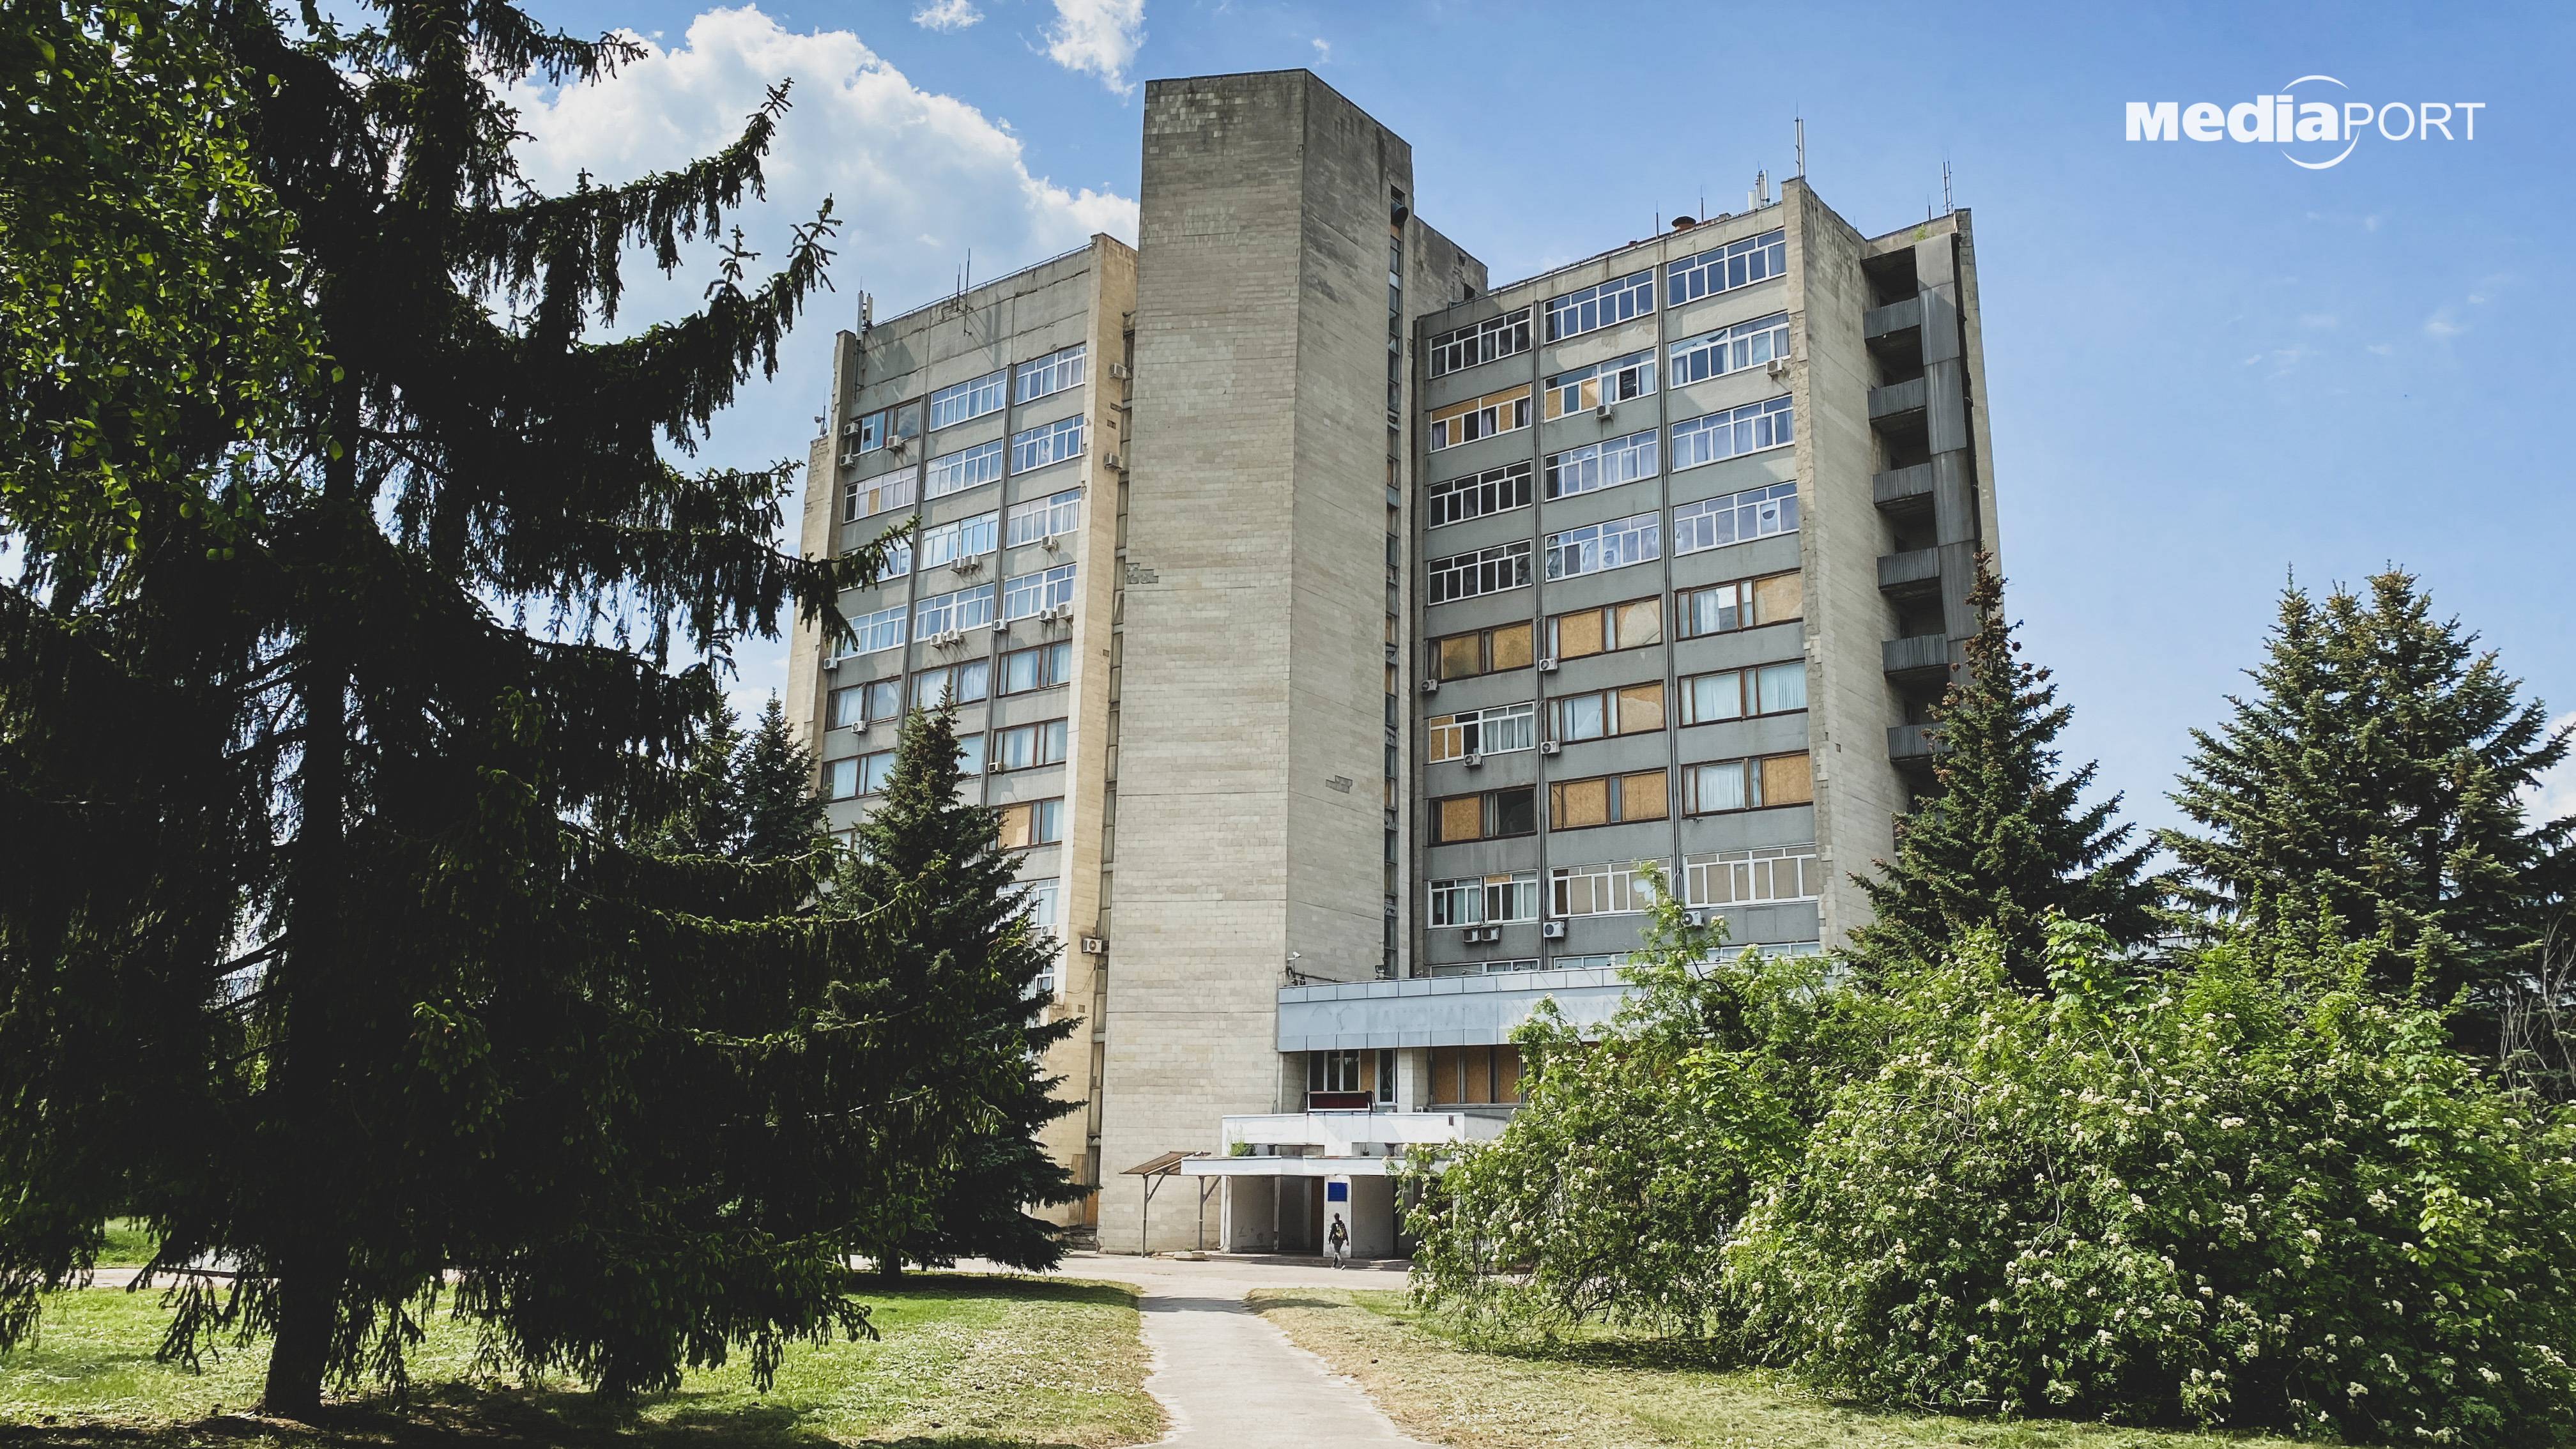 Національний науковий центр «Харківський фізико-технічний інститут» — установа, відома своїми досягненнями на весь світ. У 1932 році в Інституті розщепили ядро атома літію